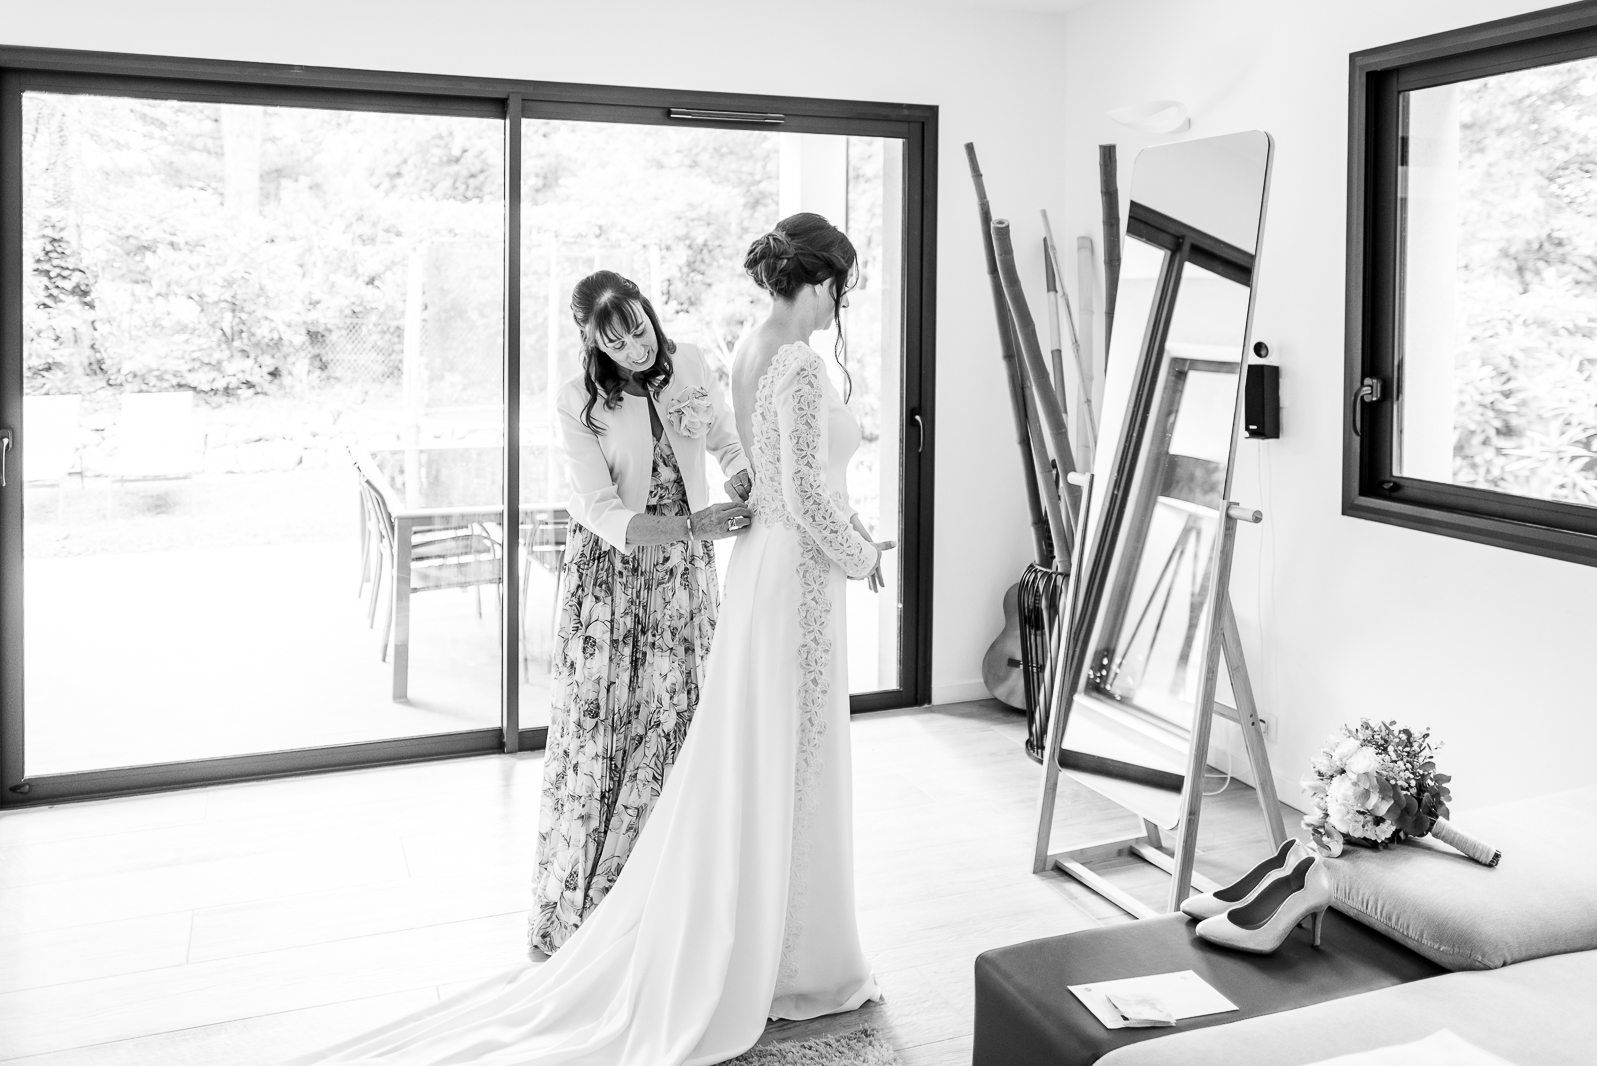 Photographe de mariage à Toulouse - habillage de la mariée dans sa robe Rosa Clara